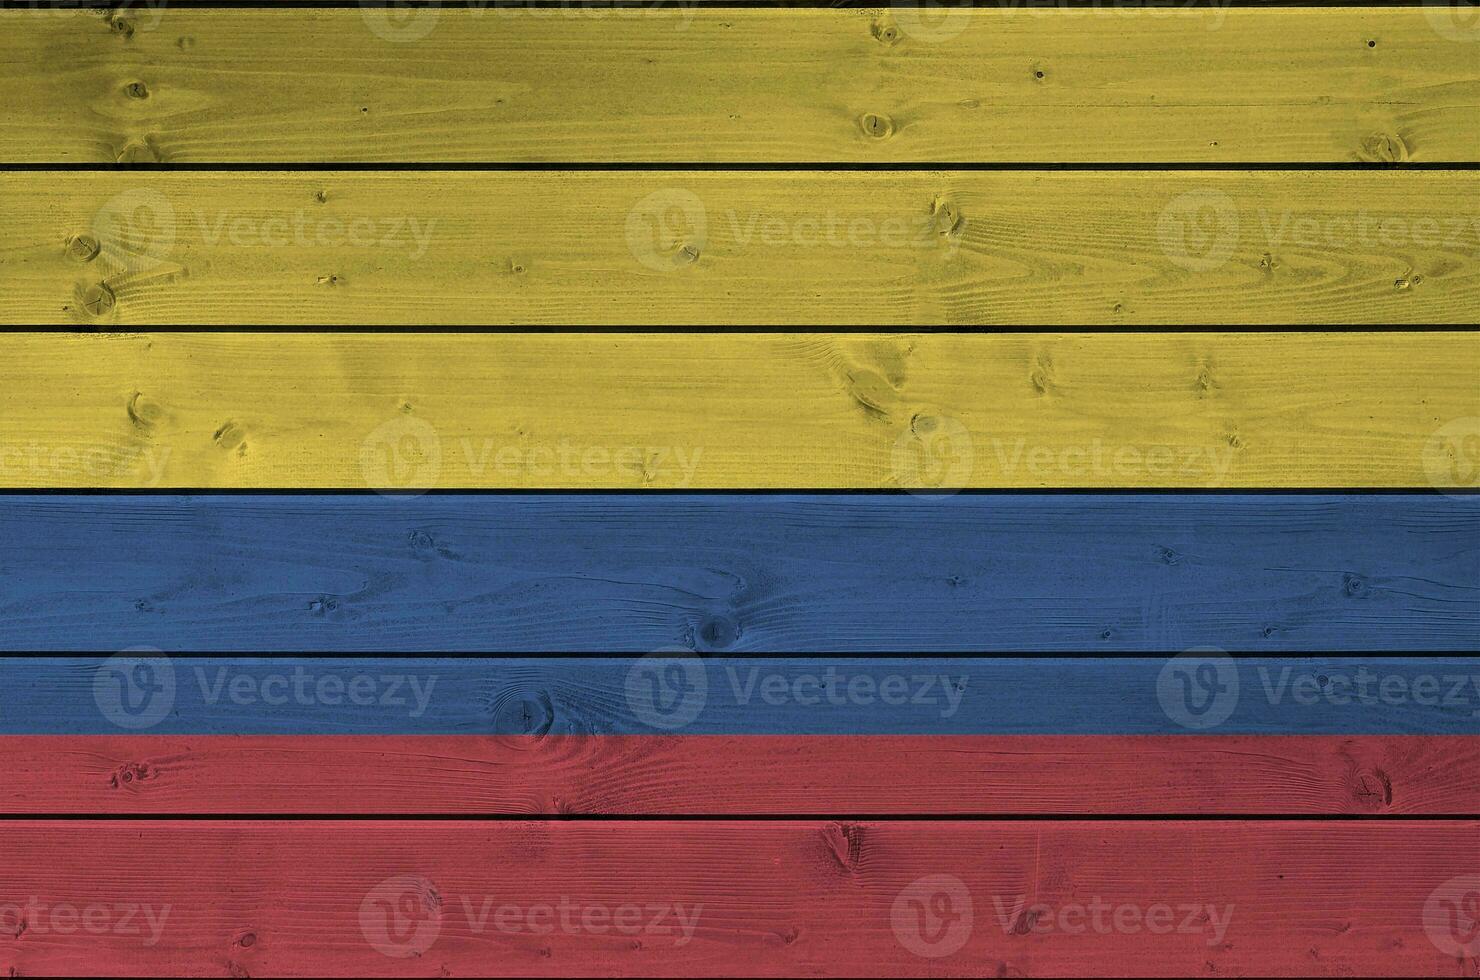 Kolumbien Flagge abgebildet im hell Farbe Farben auf alt hölzern Mauer. texturiert Banner auf Rau Hintergrund foto